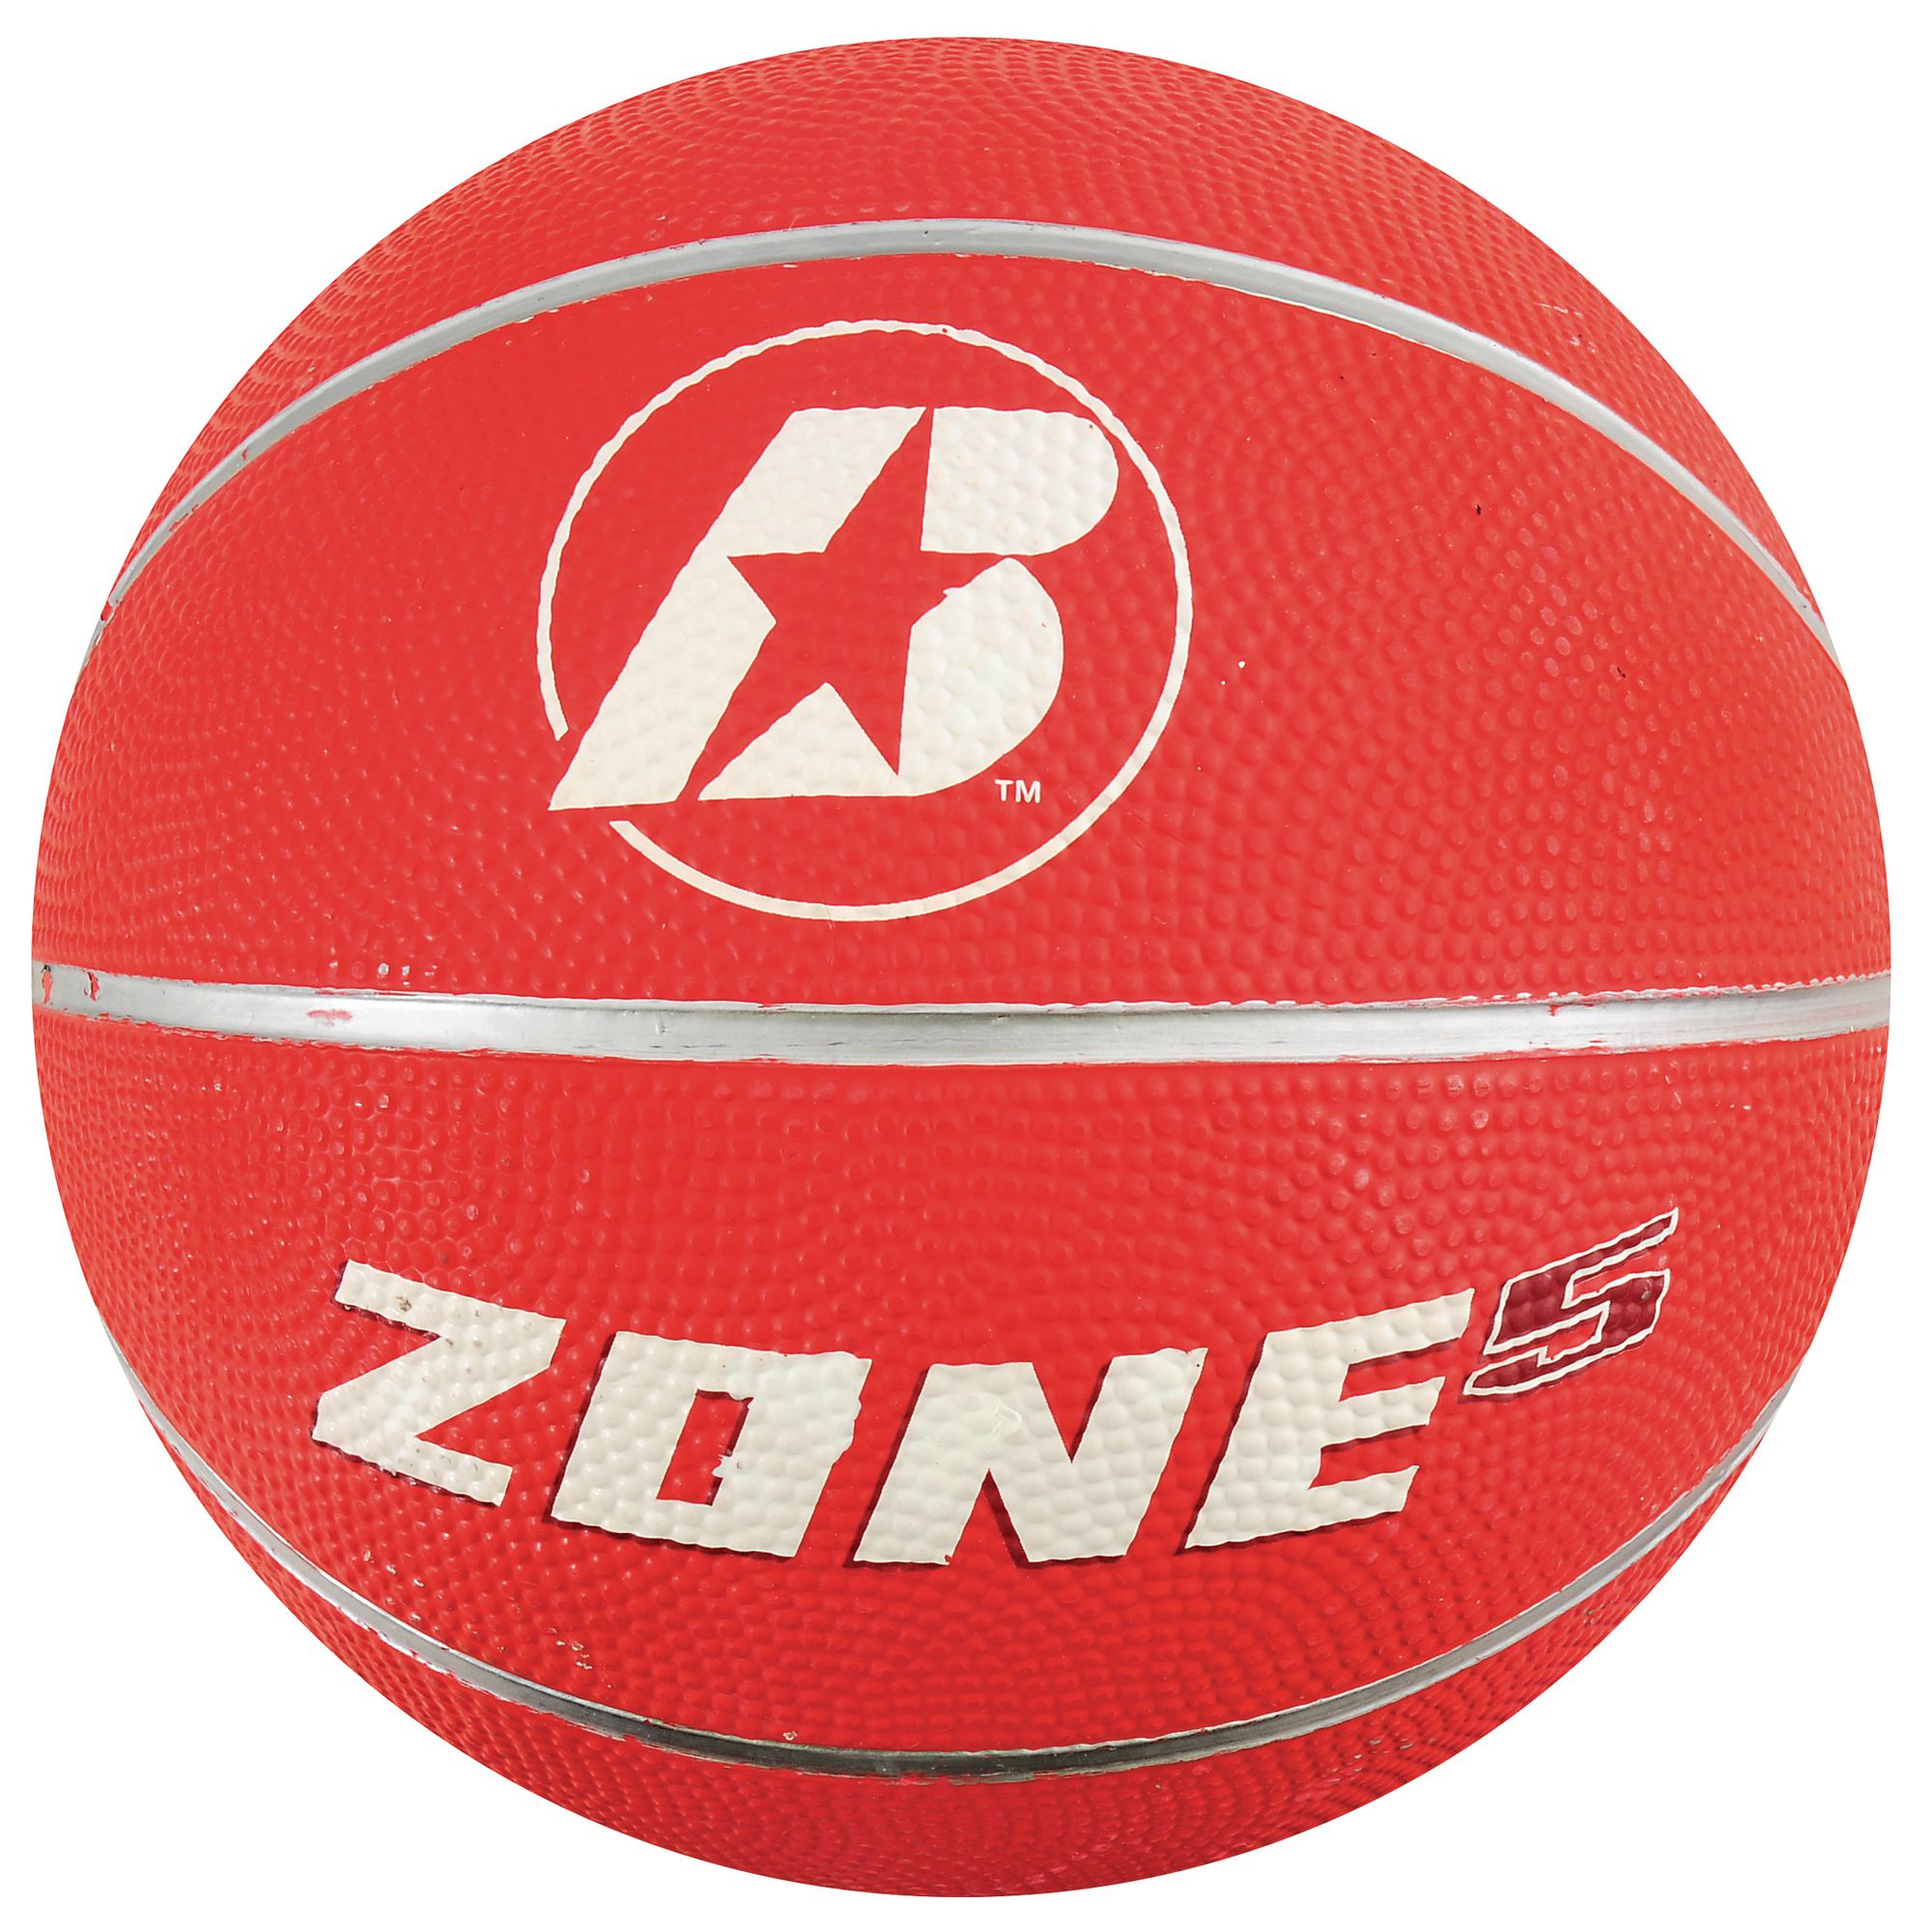 Used Baden Basketball Balls